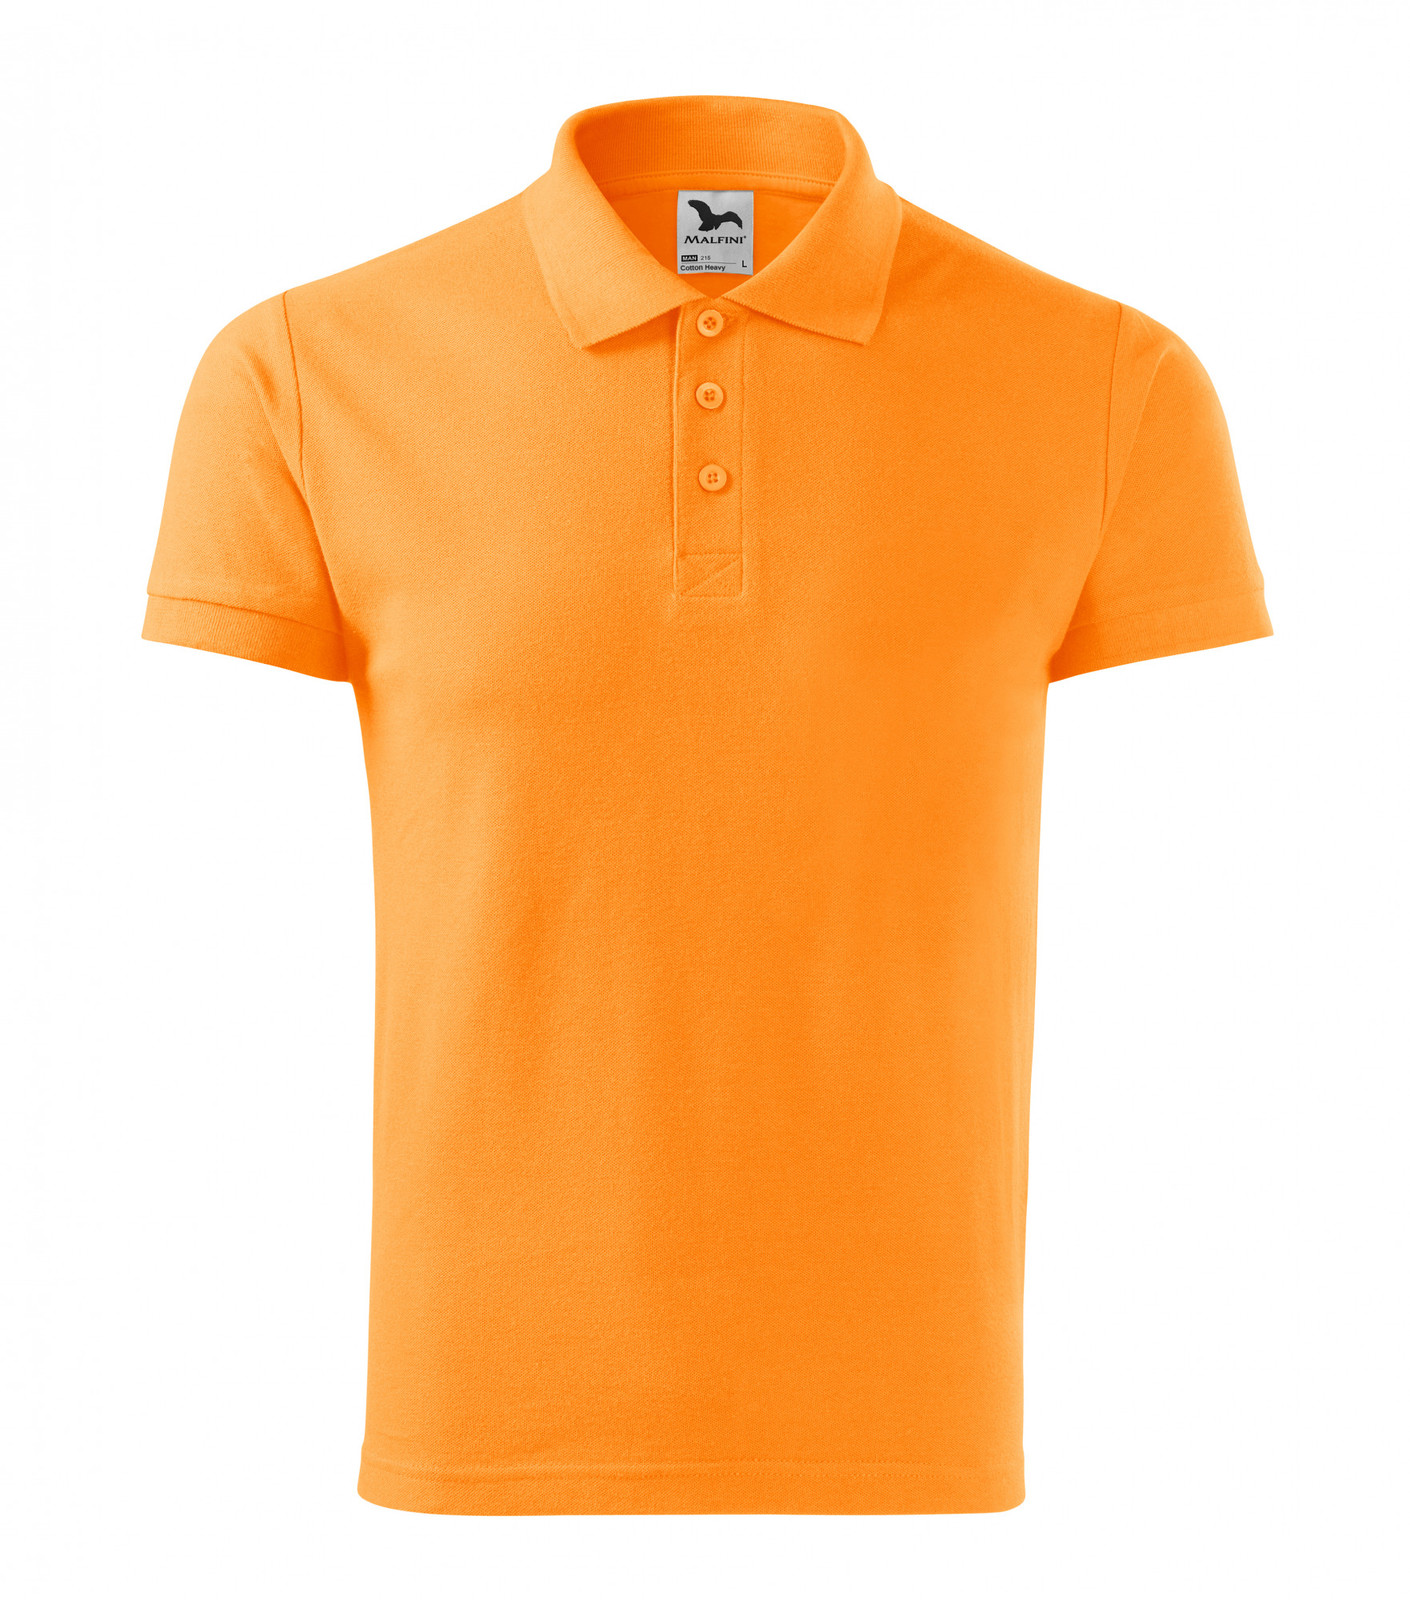 Pánska bavlnená polokošeľa Adler Cotton Heavy 215 - veľkosť: XXL, farba: mandarínková oranžová